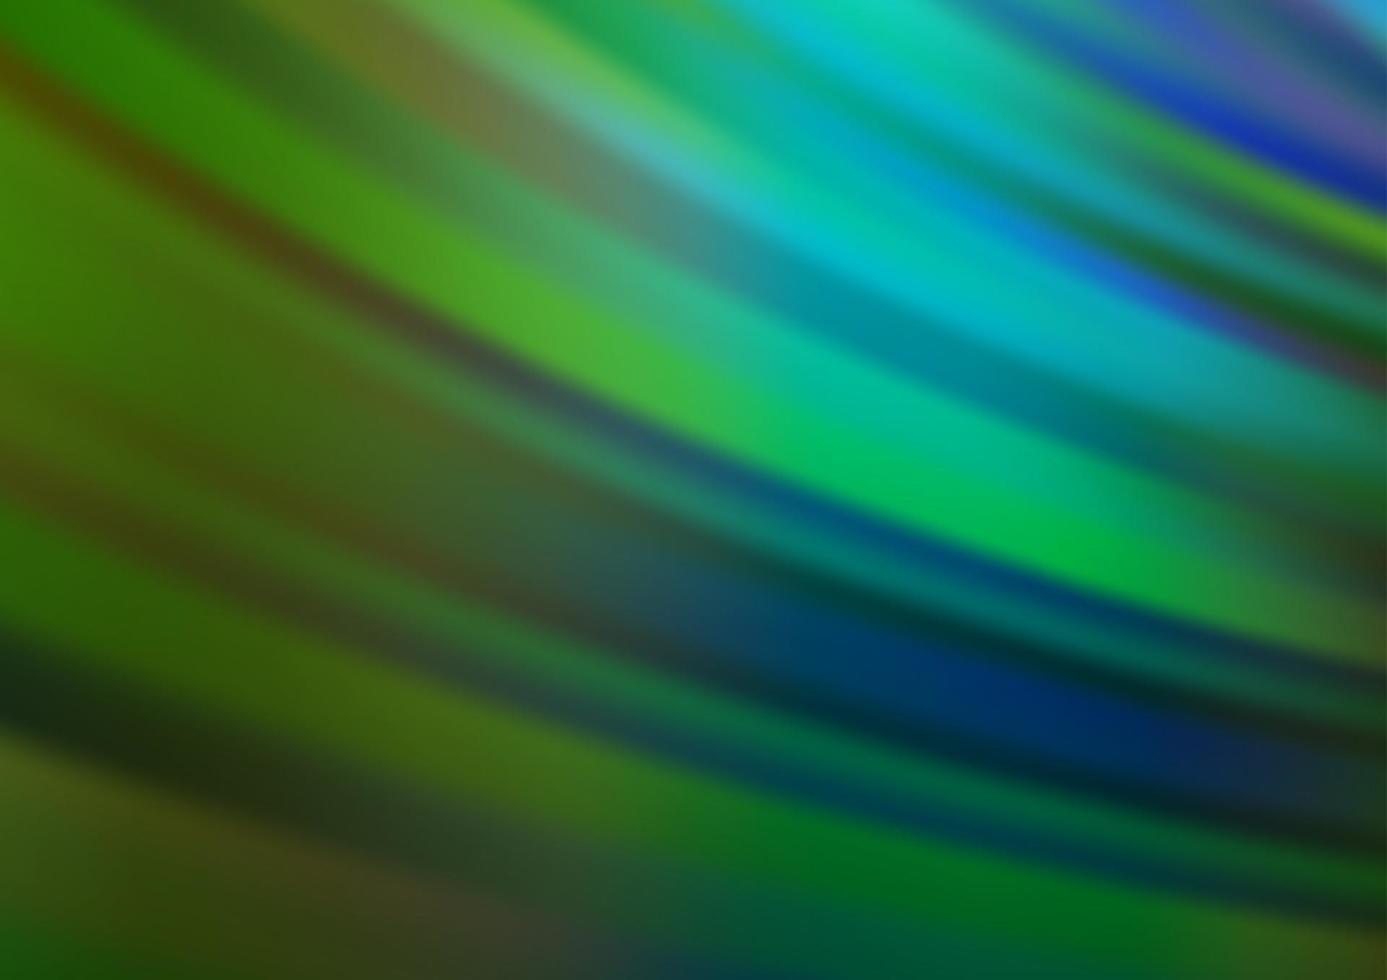 dunkelblaue, grüne Vektortextur mit farbigen Linien. vektor